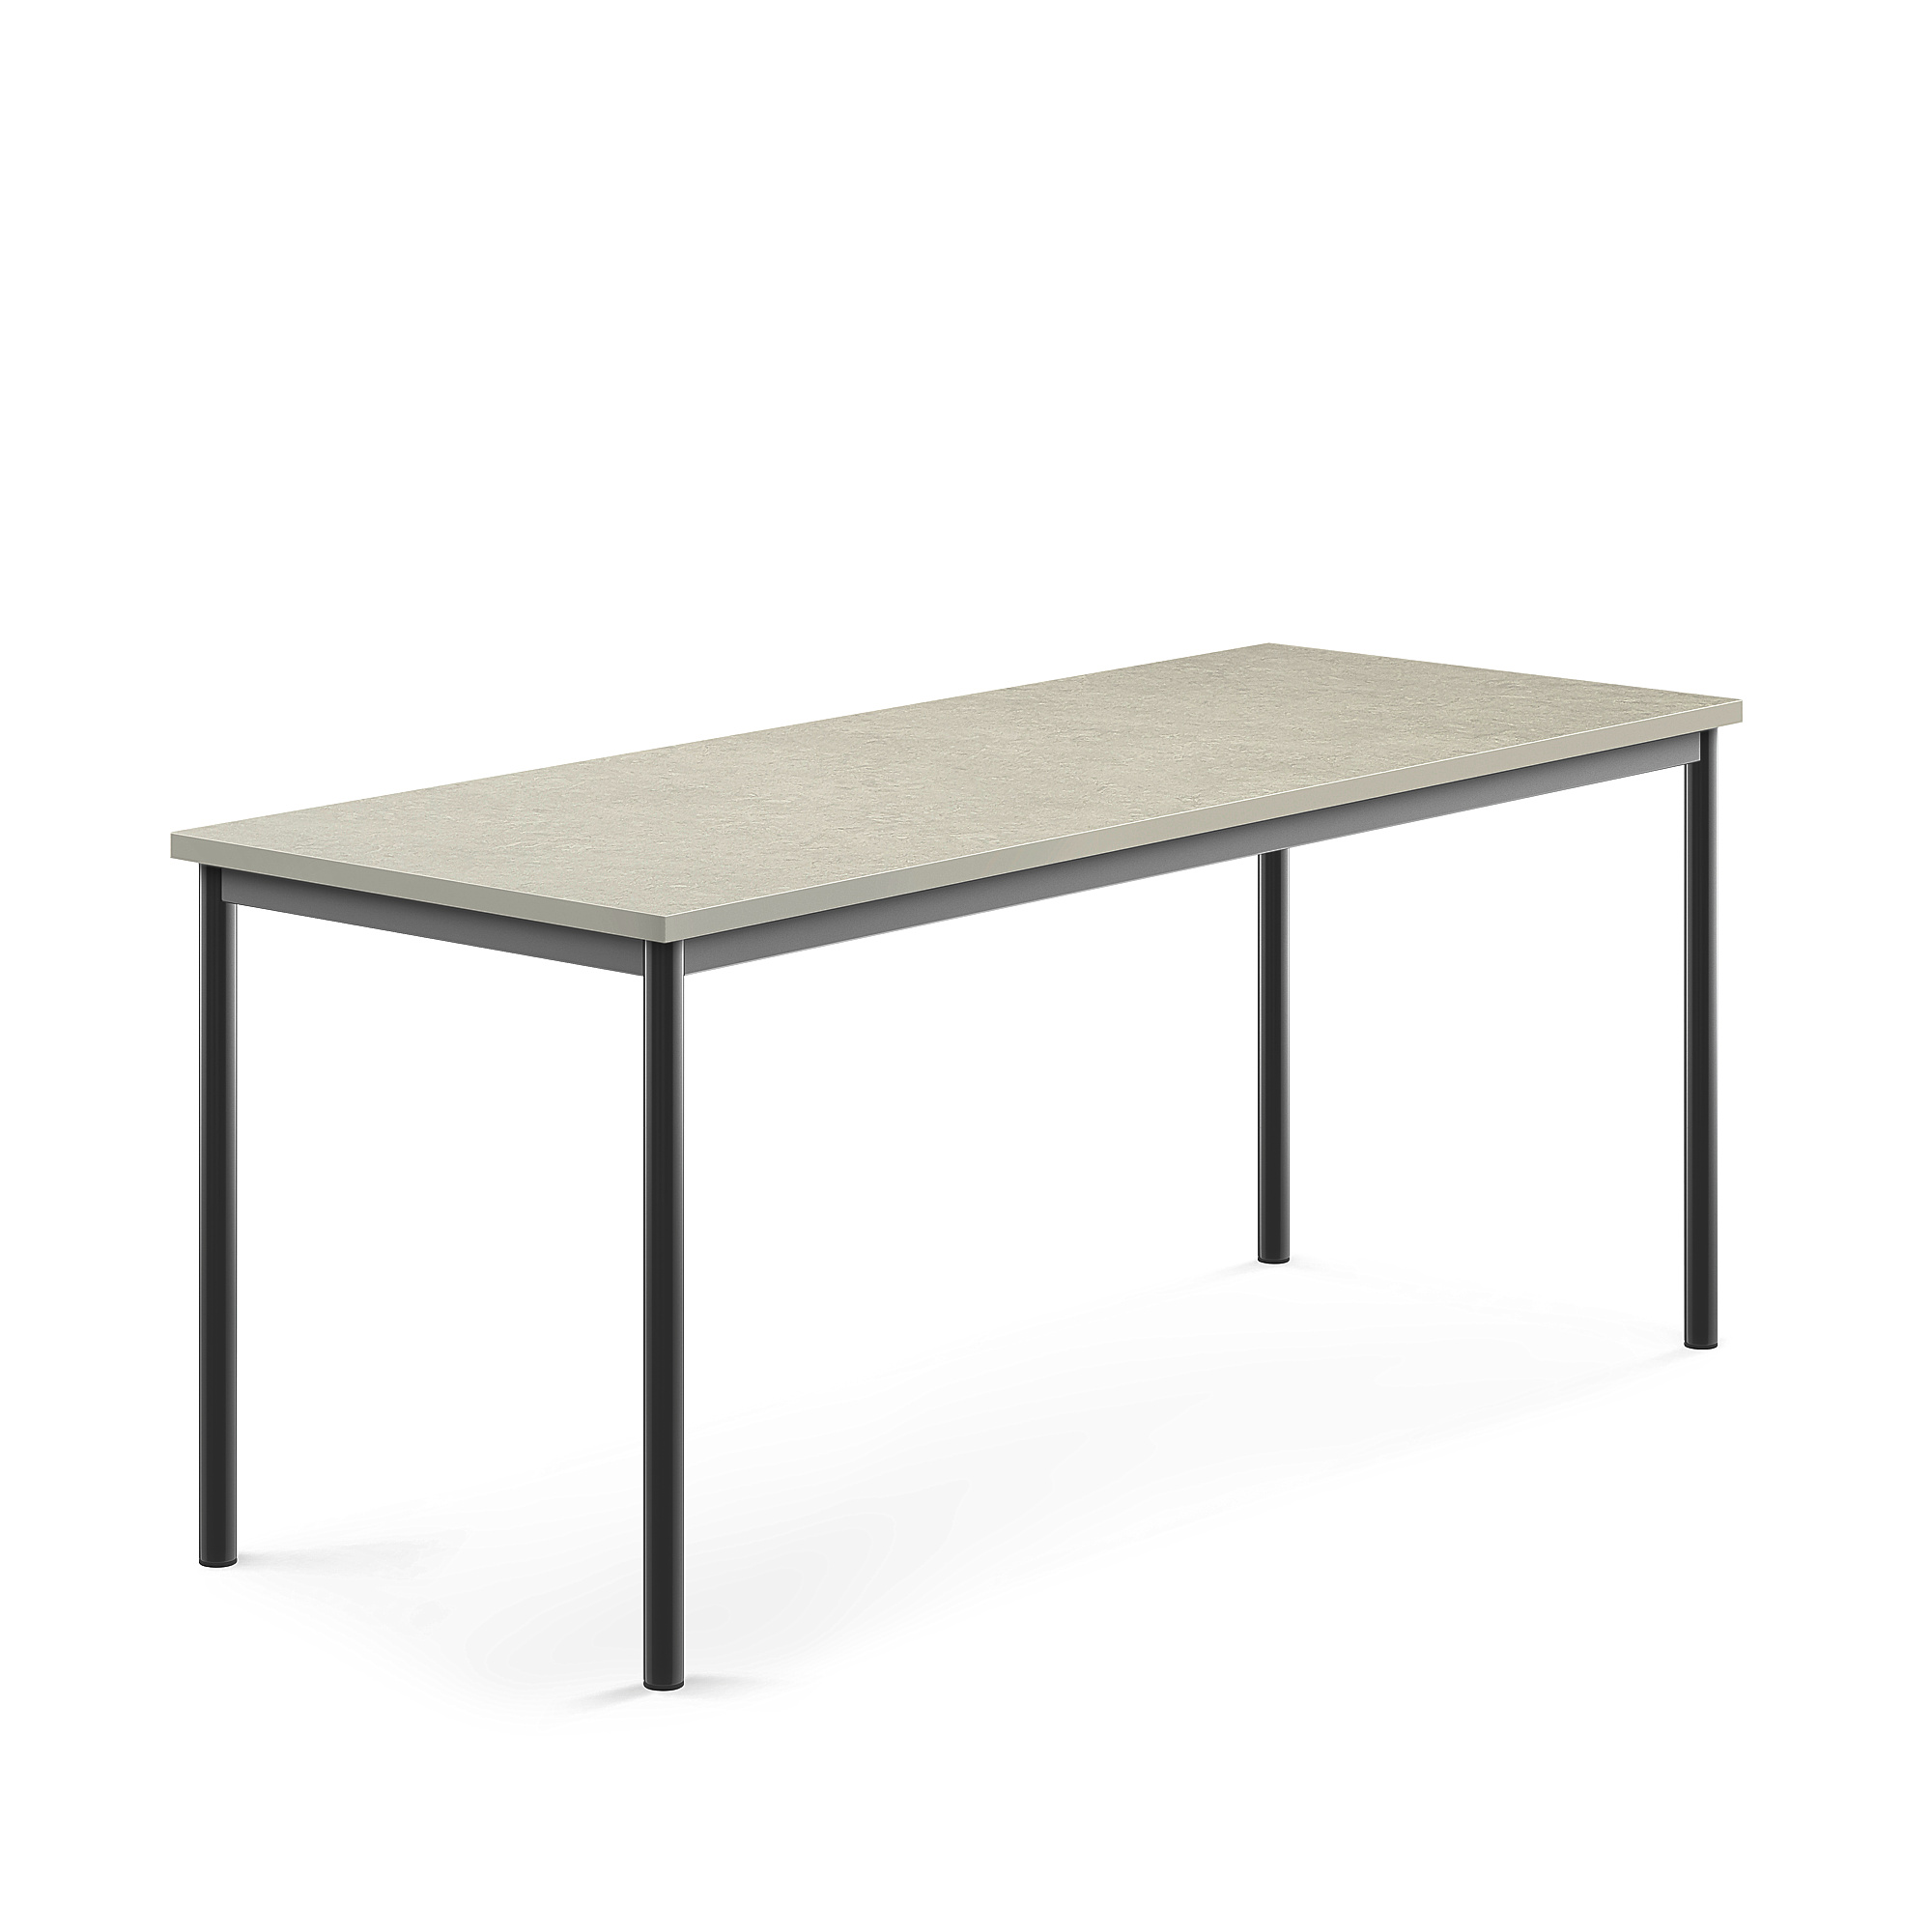 Stůl SONITUS, 1800x700x720 mm, antracitově šedé nohy, deska s linoleem, šedá